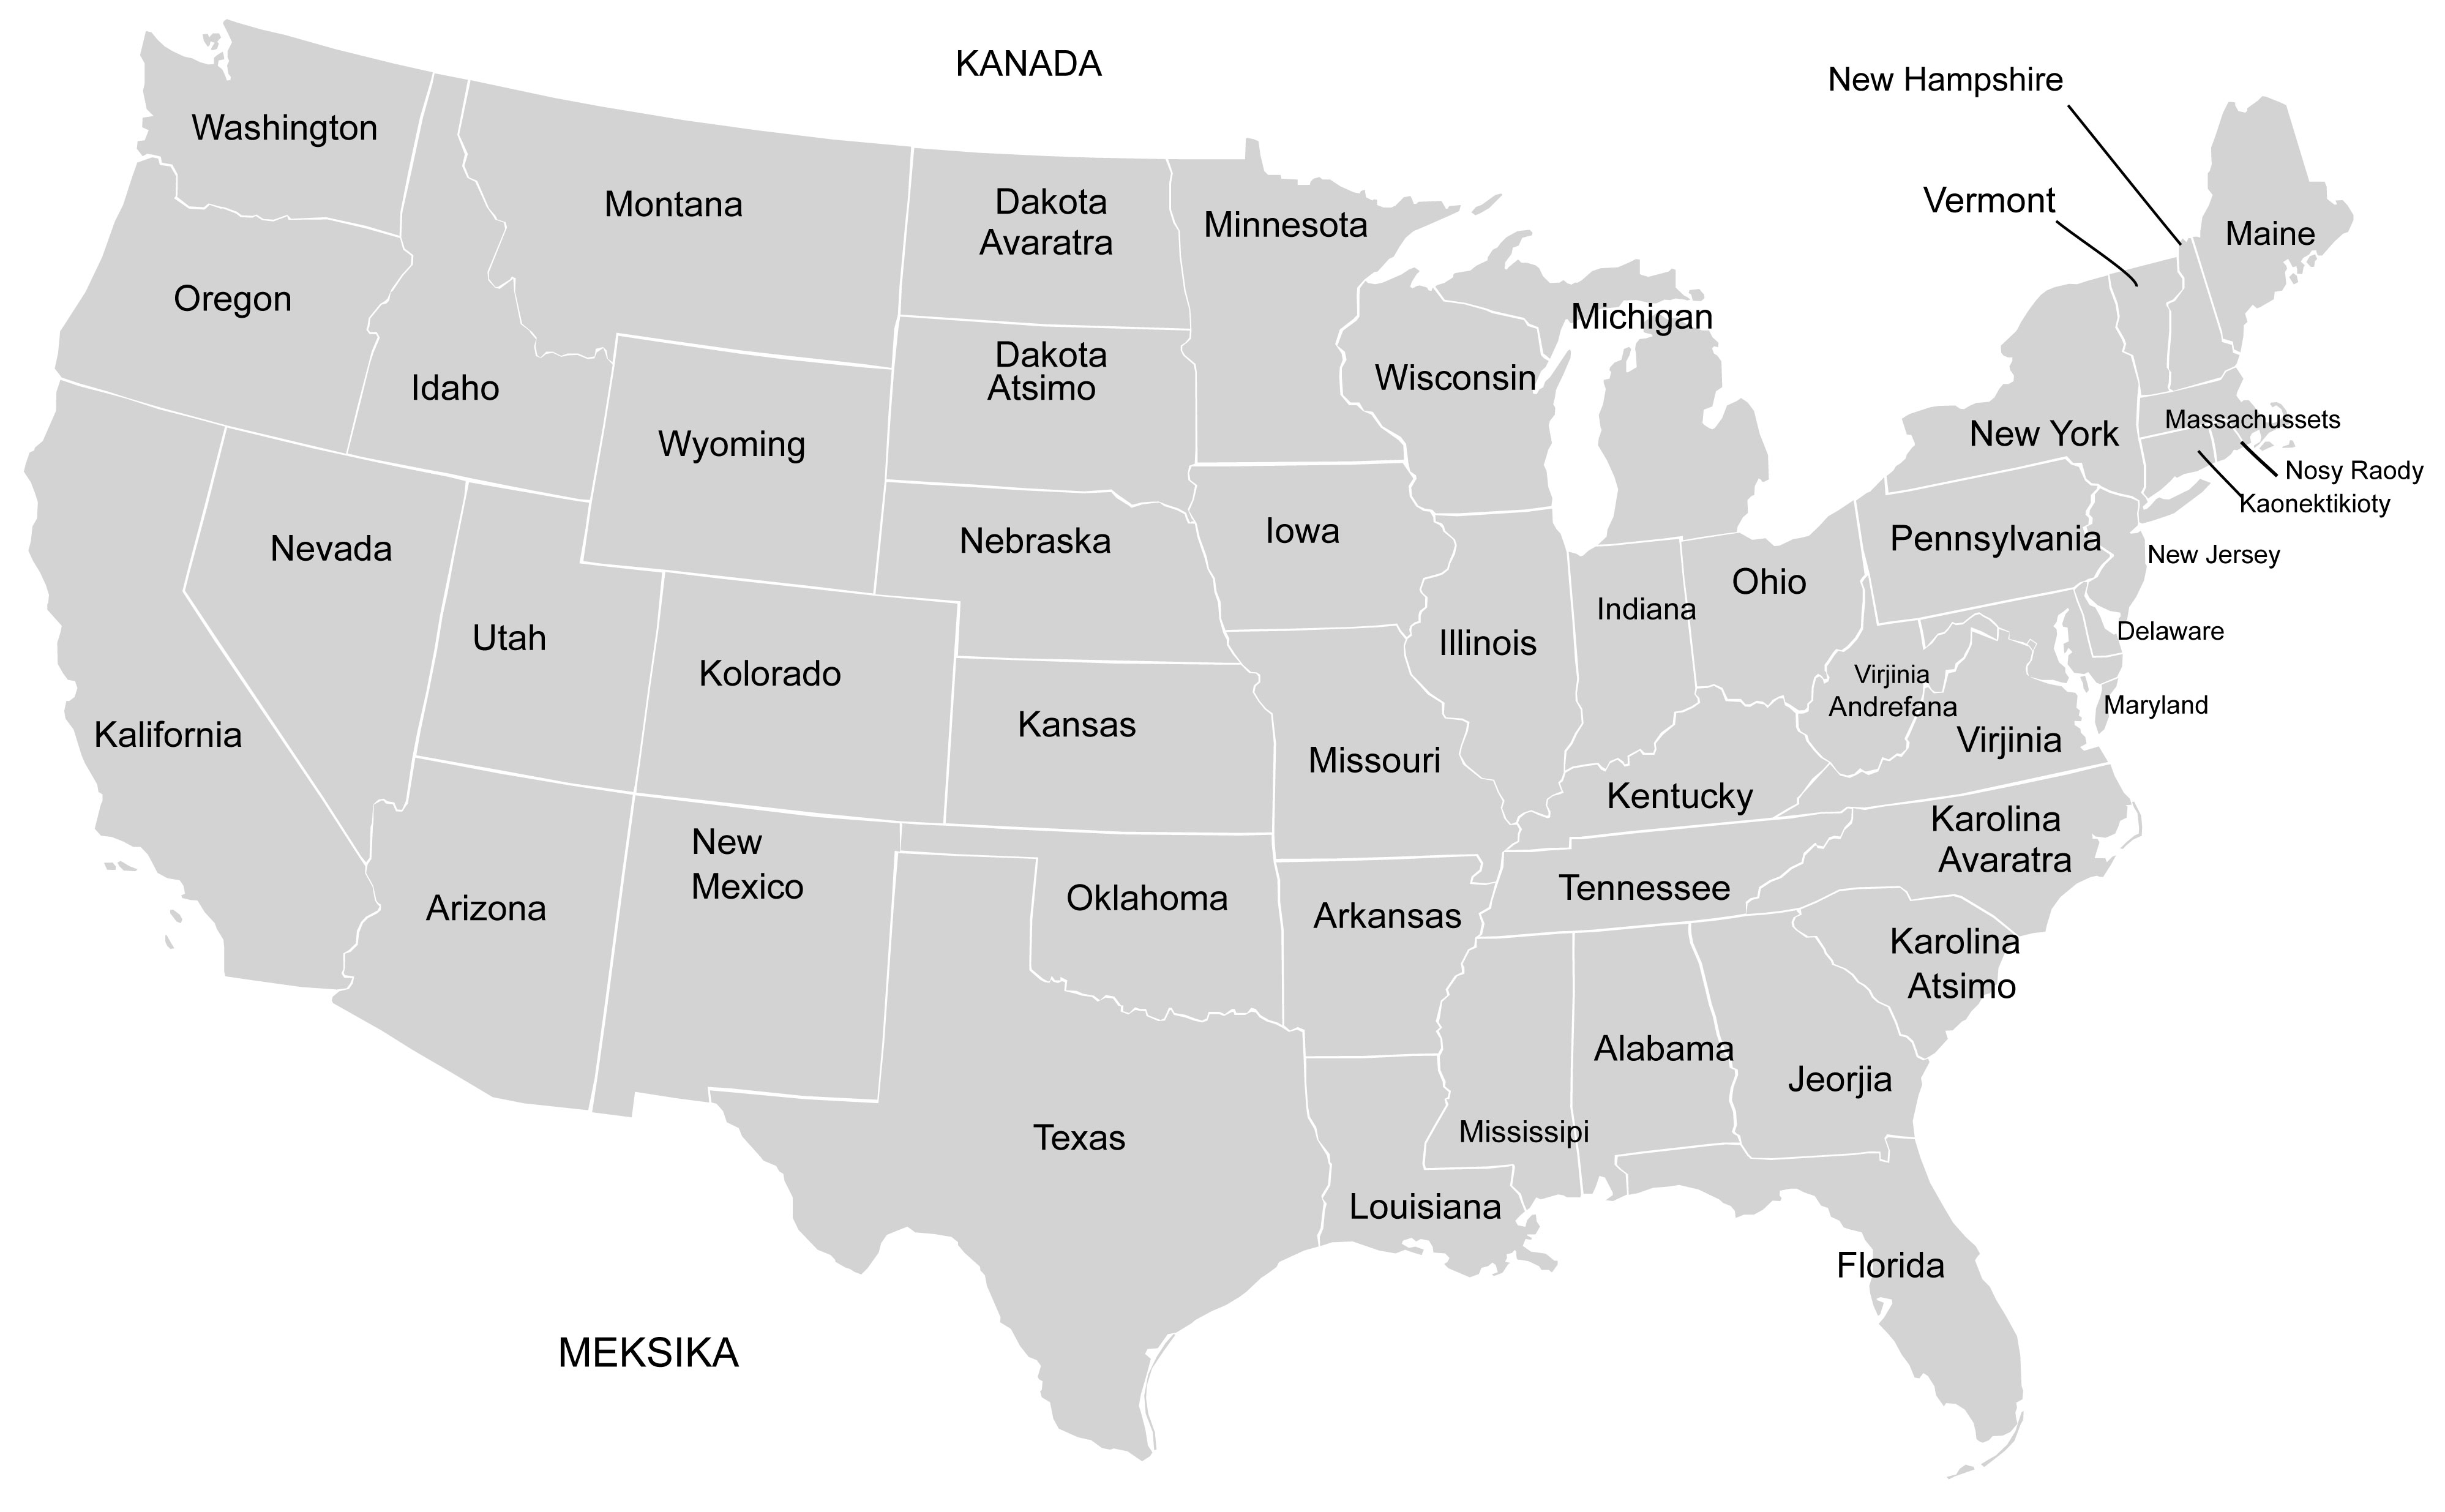 밝은 회색영역으로 미국의 주가 구분된 지도입니다